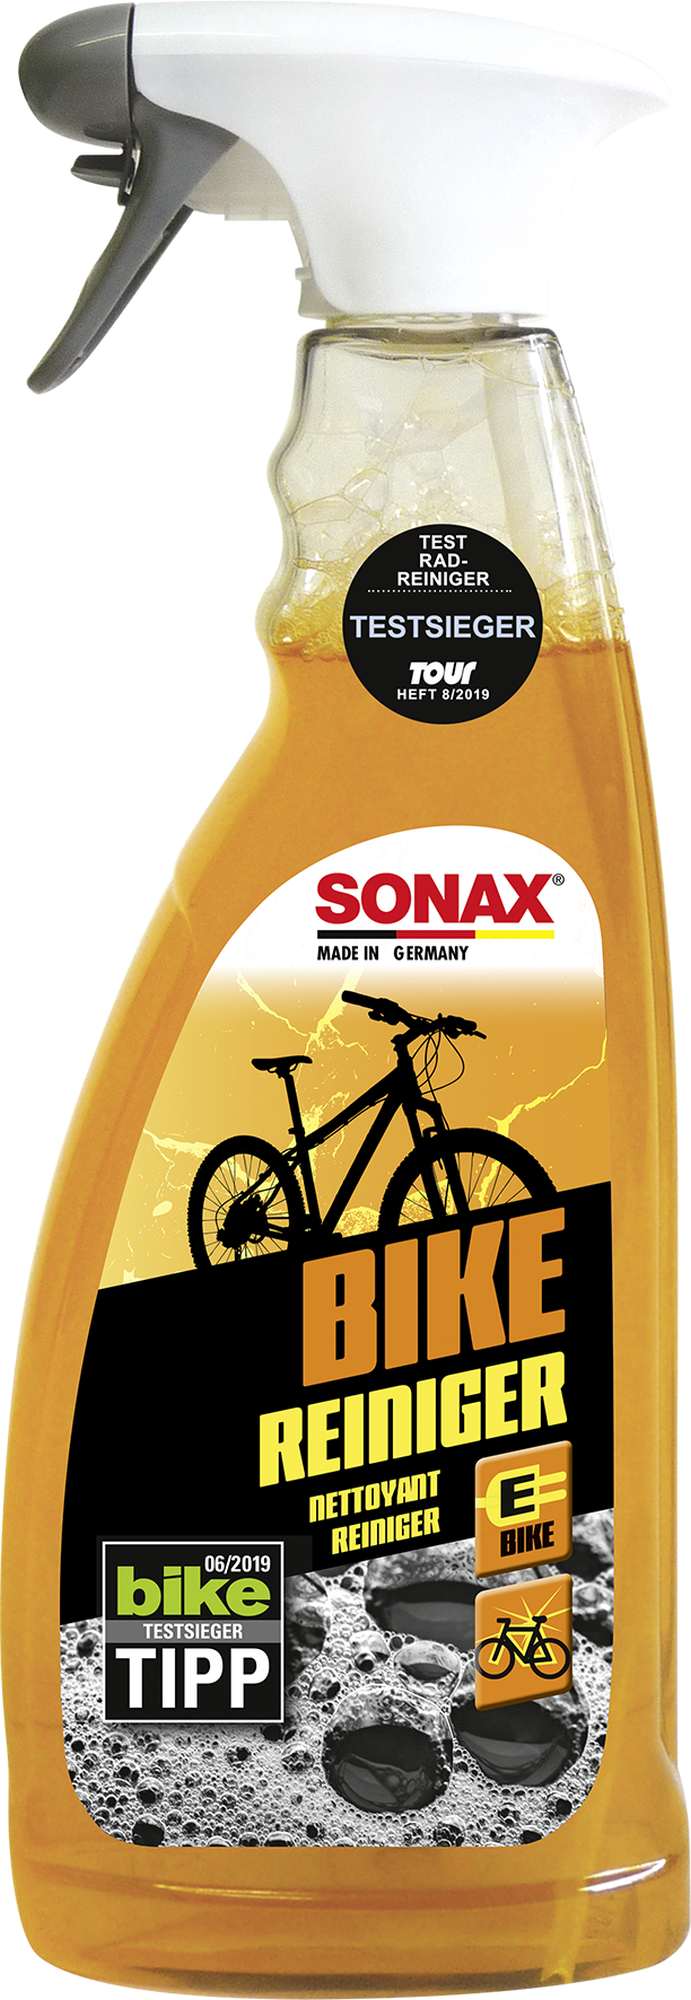 Sonax Bike Reiniger - Fahrradreiniger, 750 ml